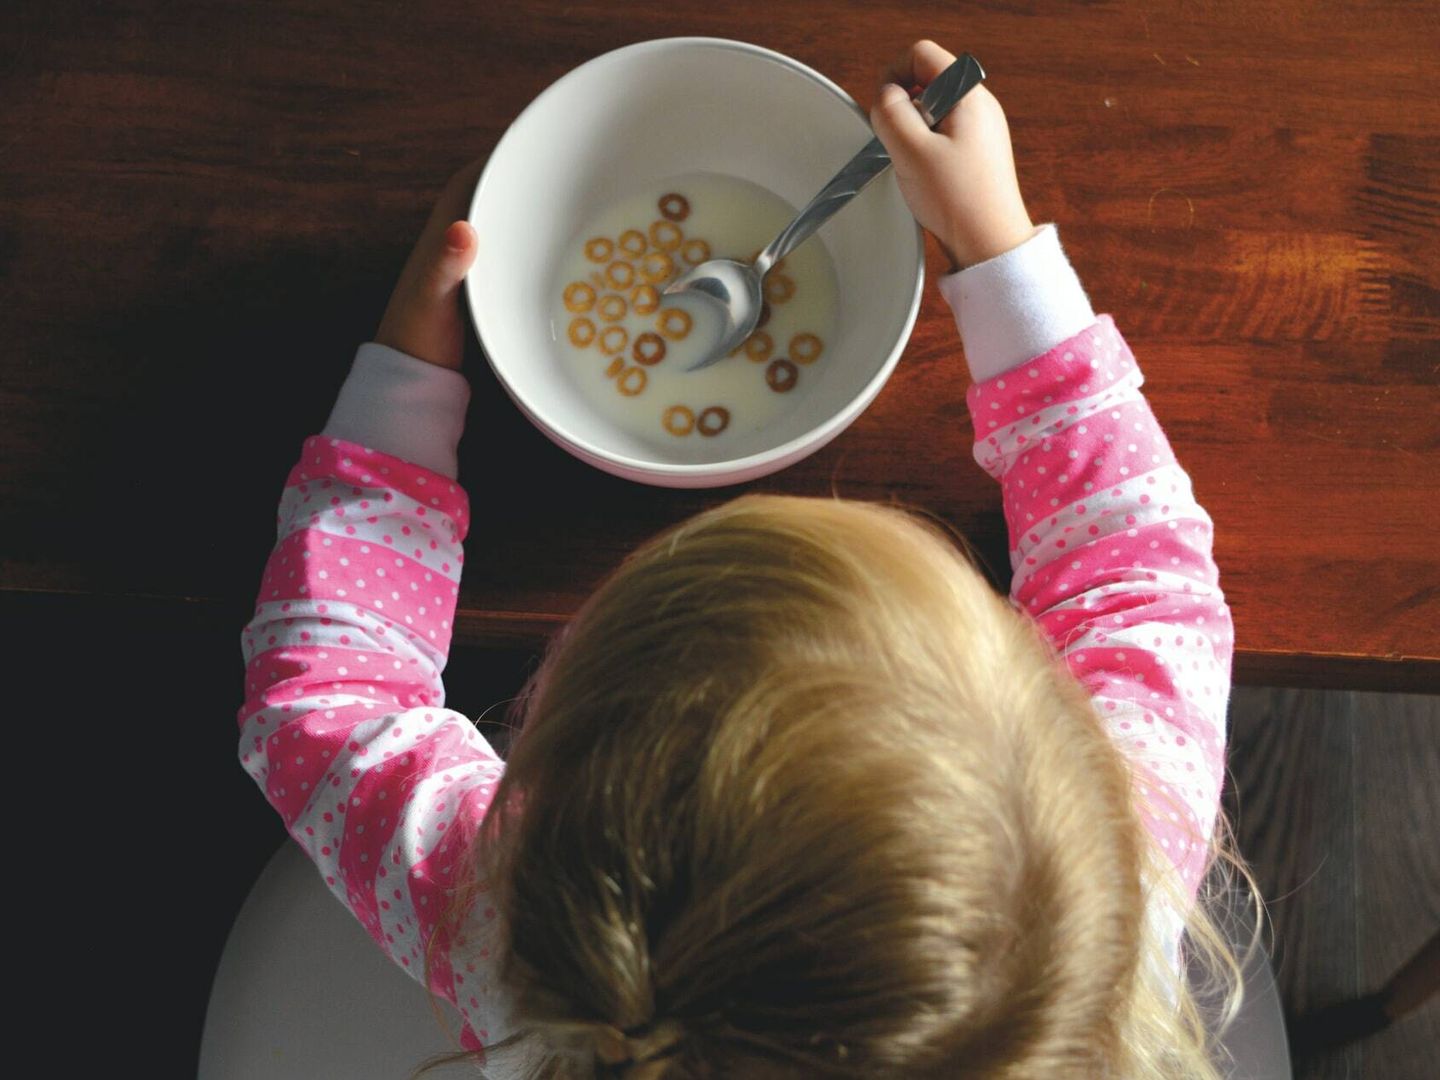 Los niños están creciendo y desarrollándose, por lo que las dietas están contraindicadas (Unsplash)